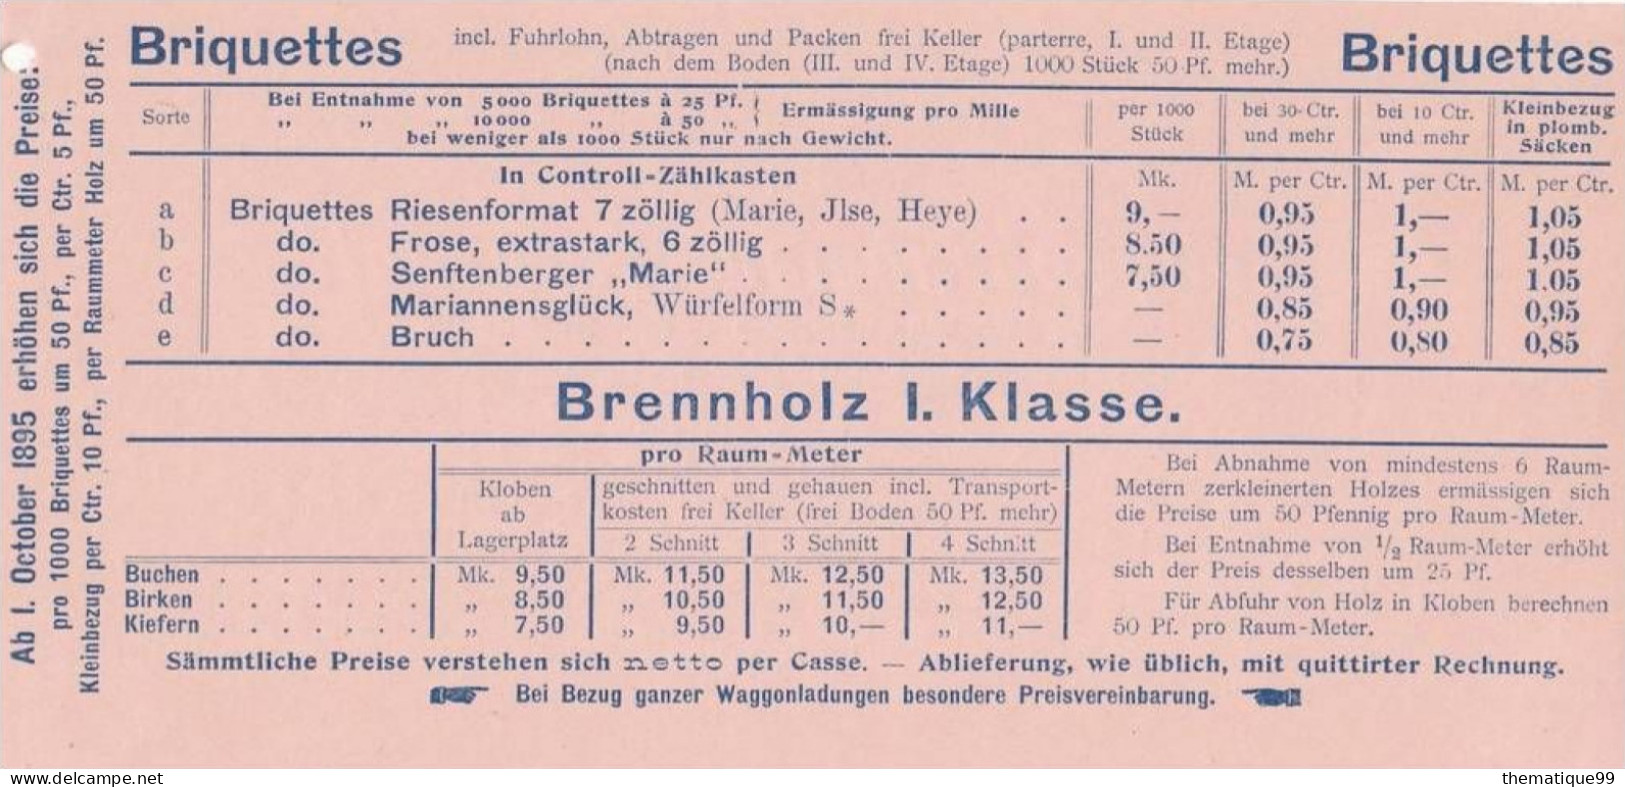 Entier postal poste locale de Berlin provenant d'un carnet avec publicités du carnet (1897): bois charbon coke chauffage